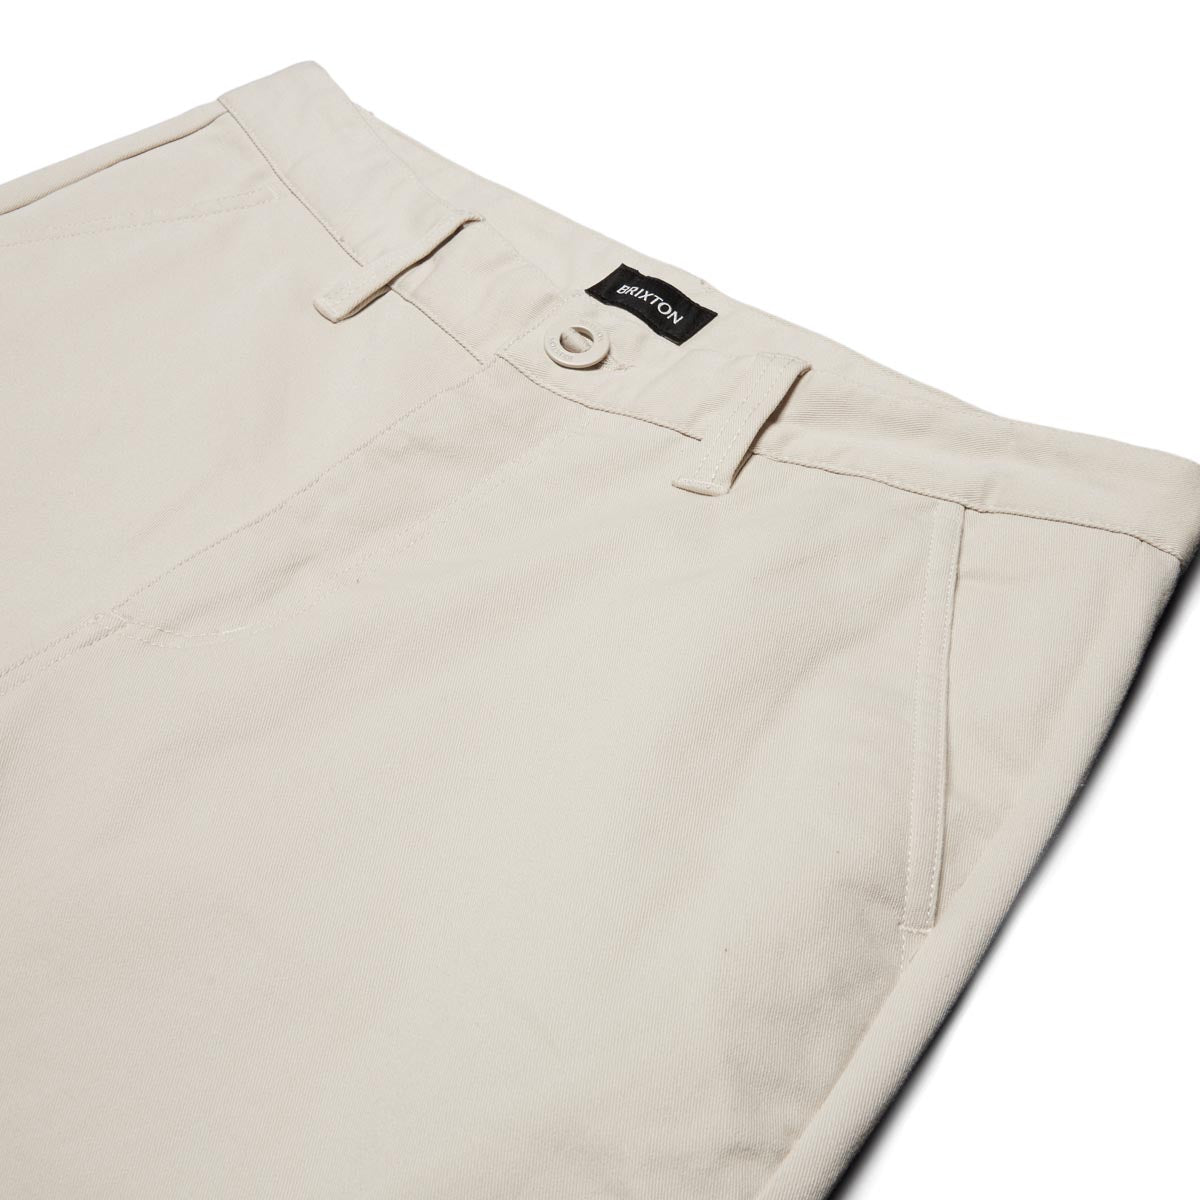 Brixton Choice Chino Regular Pants - Whitecap image 3